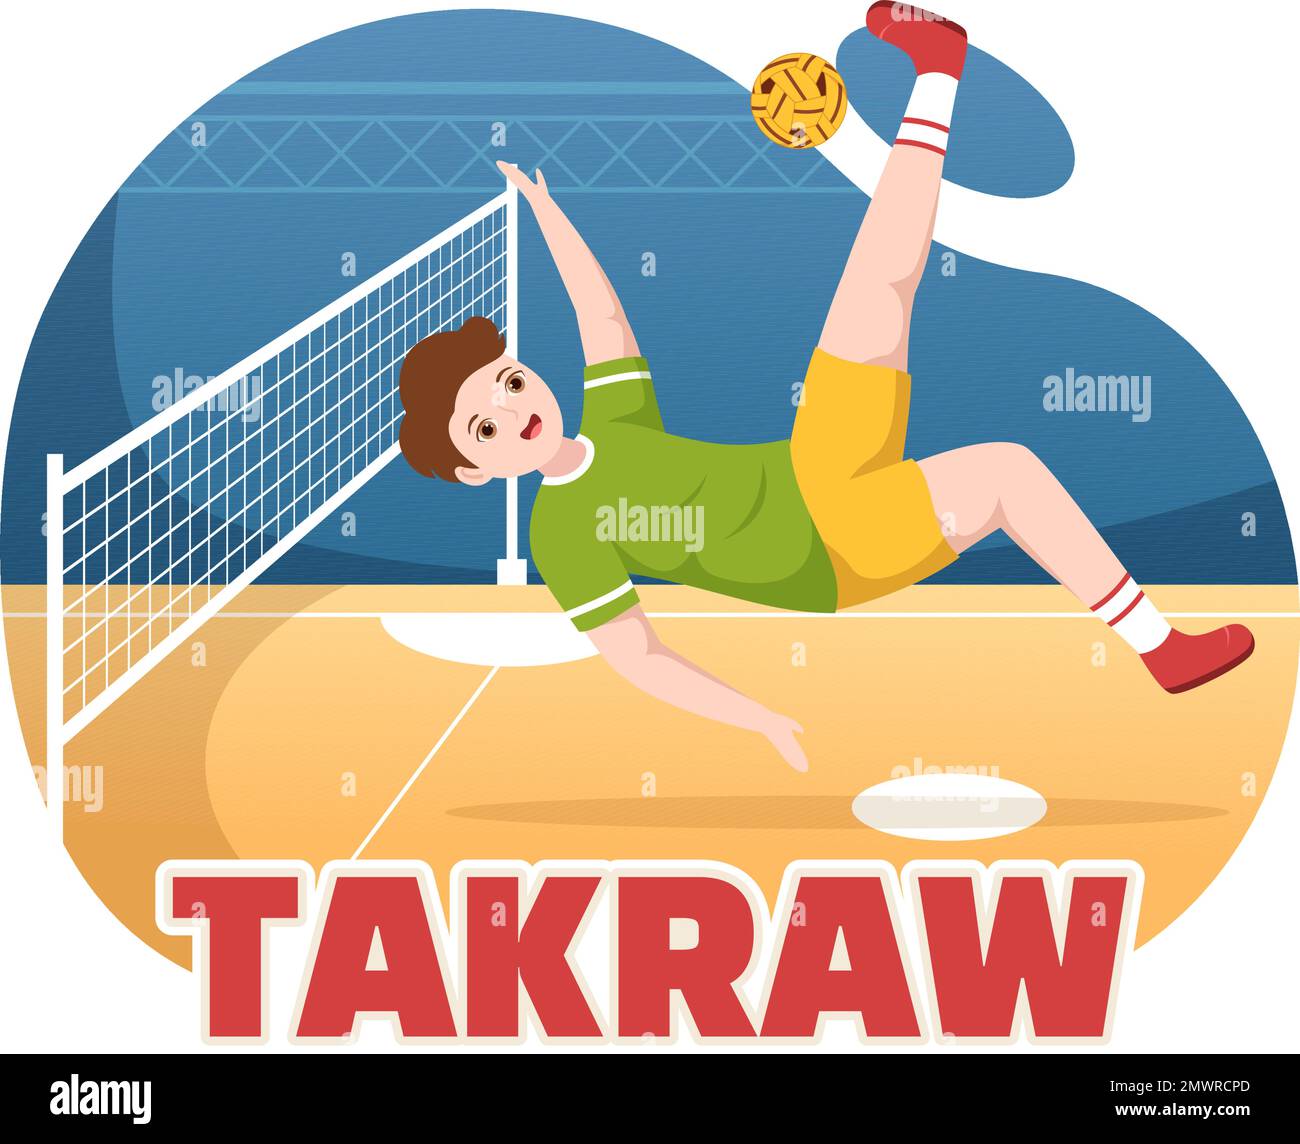 Sepak Takraw Illustrazione con atleta giocando Kick Ball sul campo in Flat Sports Game Competition Cartoon Hand disegnato per Landing Page Template Illustrazione Vettoriale